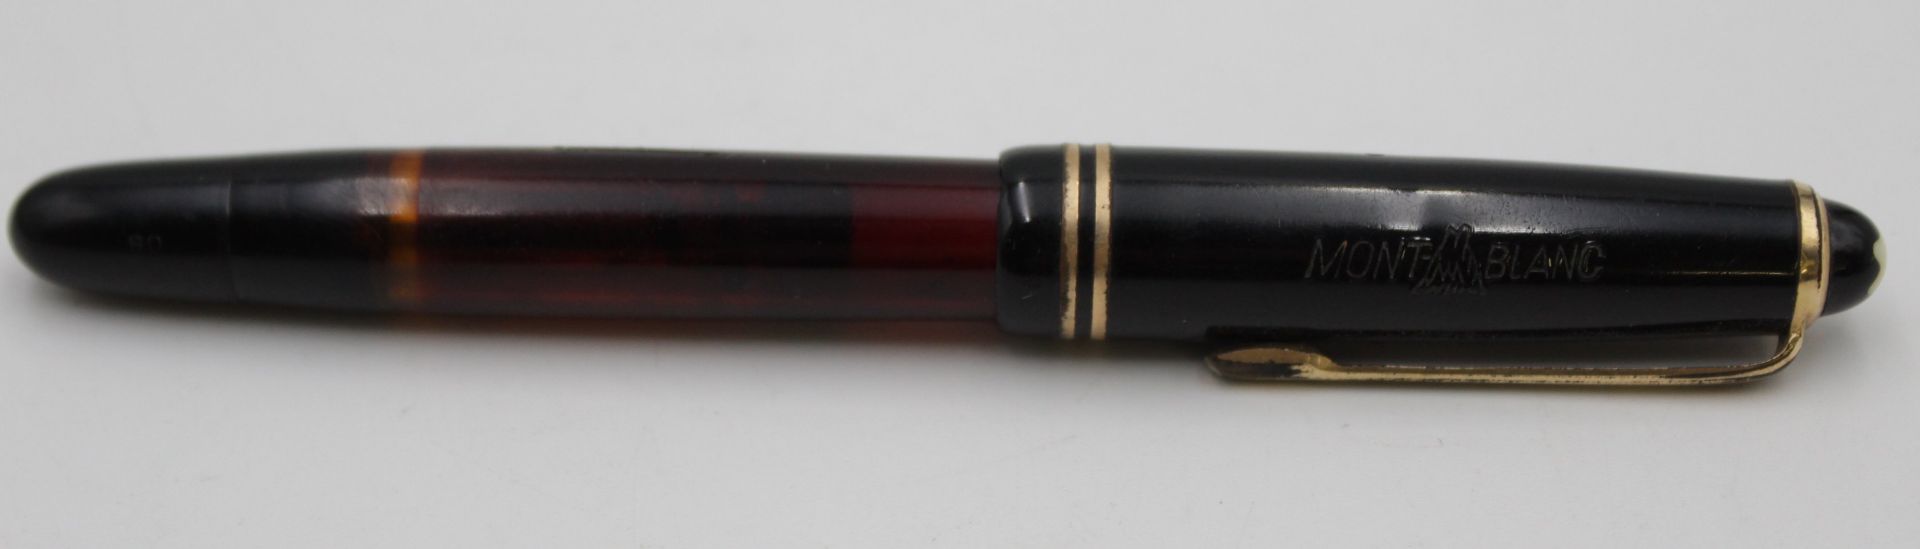 2x alte Füller, Montblanc u. Pelikan, je mit 585er GG Feder, Gebrauchsspuren - Bild 5 aus 7